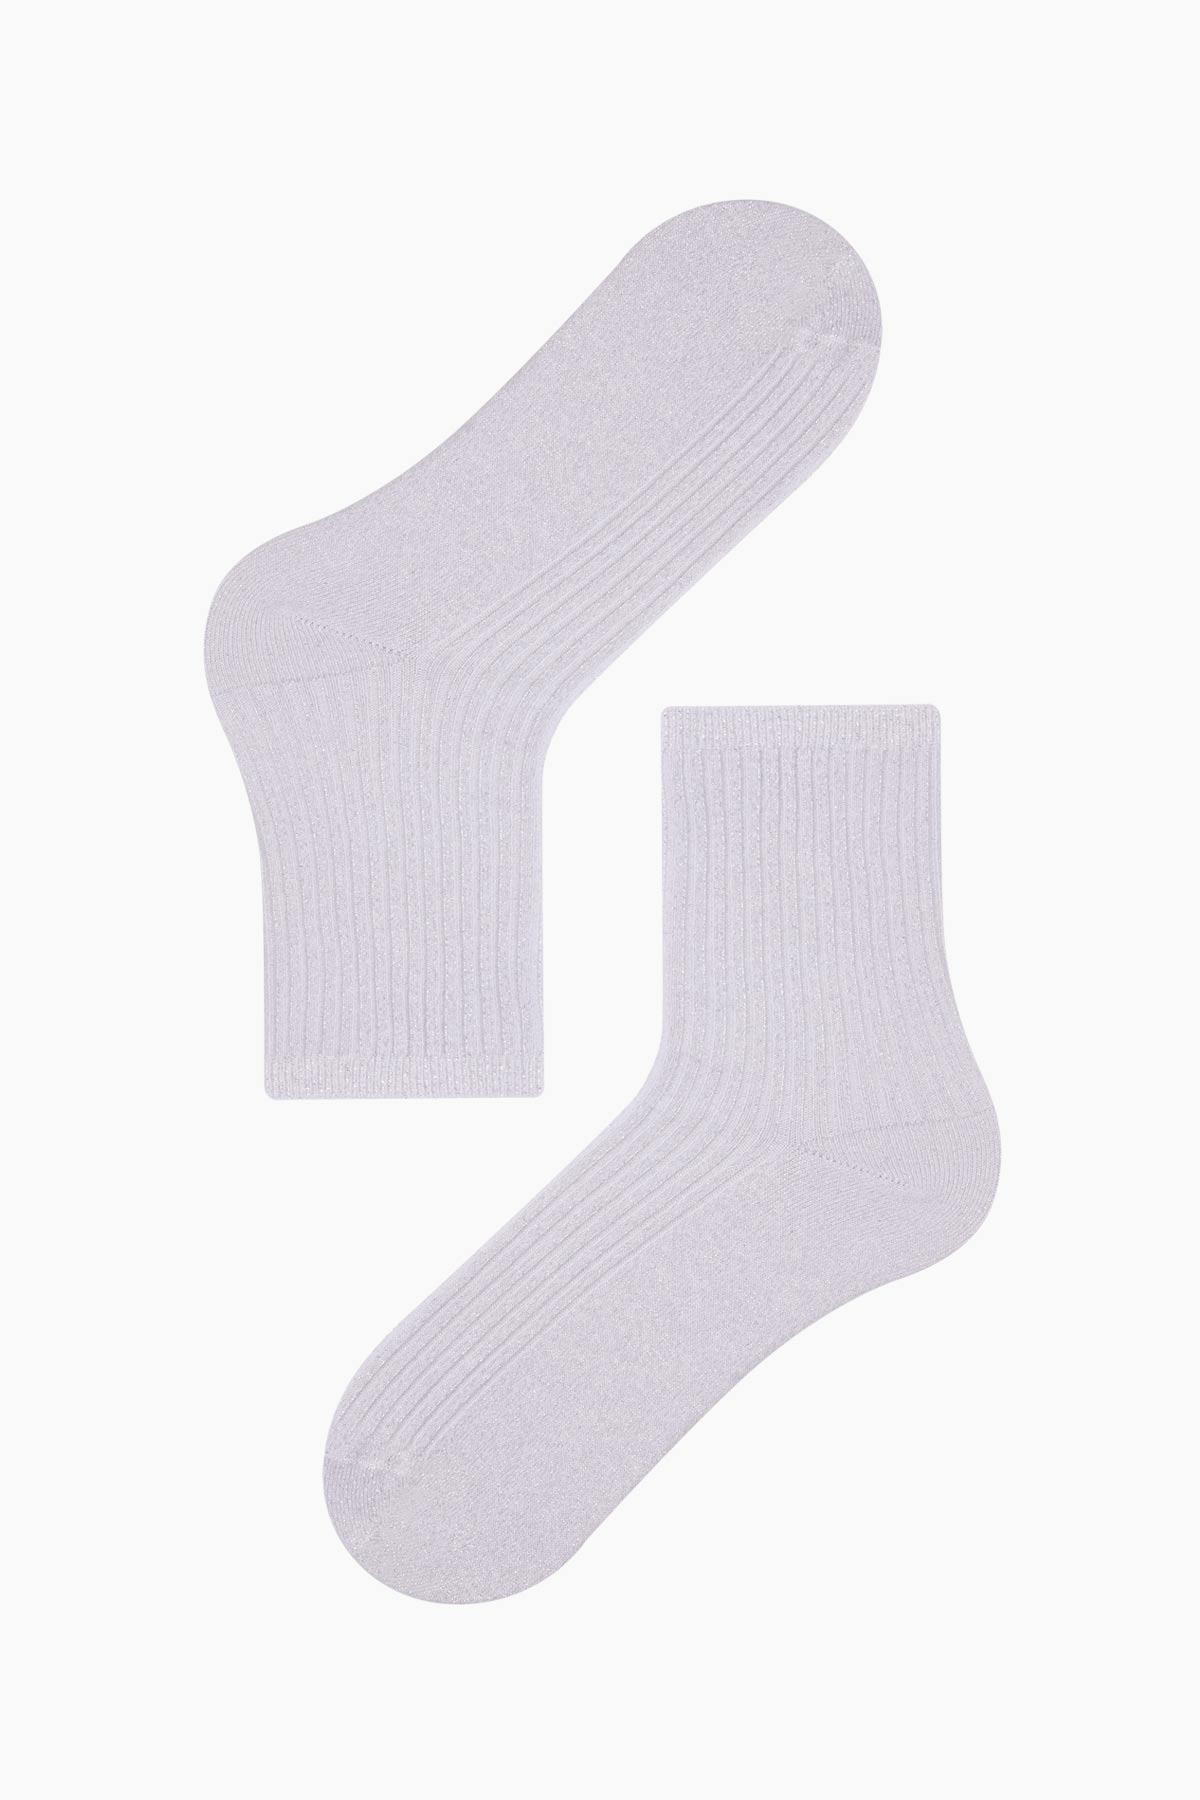 Bross Silvery Women's Socks